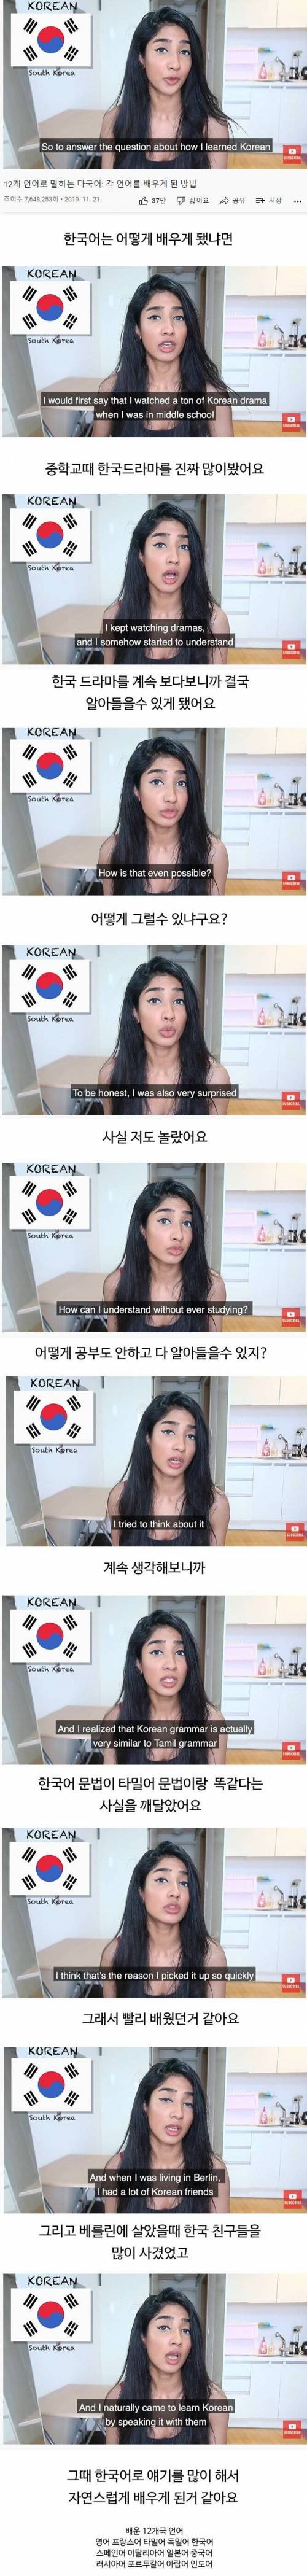 인도 여성이 말하는 한국어 쉽게 배운 이유.jpg